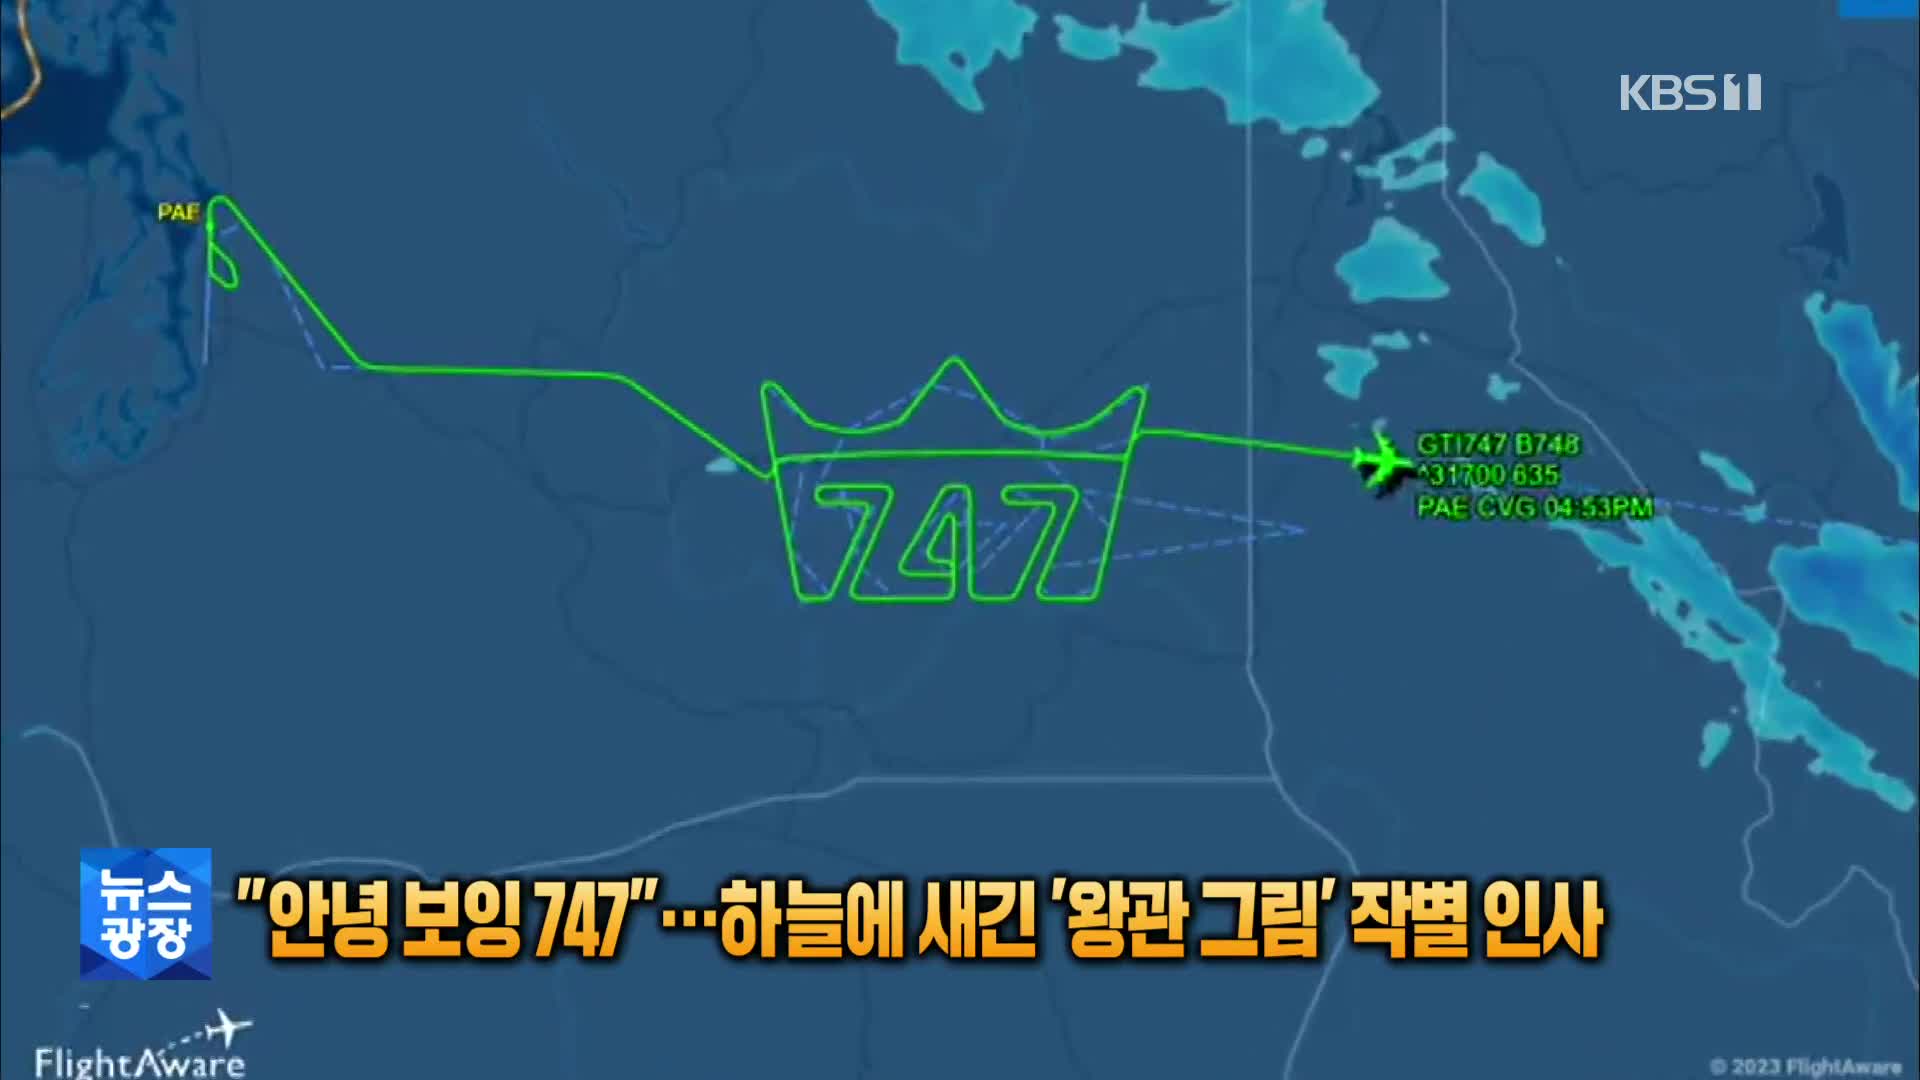 [톡톡 지구촌] “안녕 보잉 747”…하늘에 새긴 ‘왕관 그림’ 작별 인사